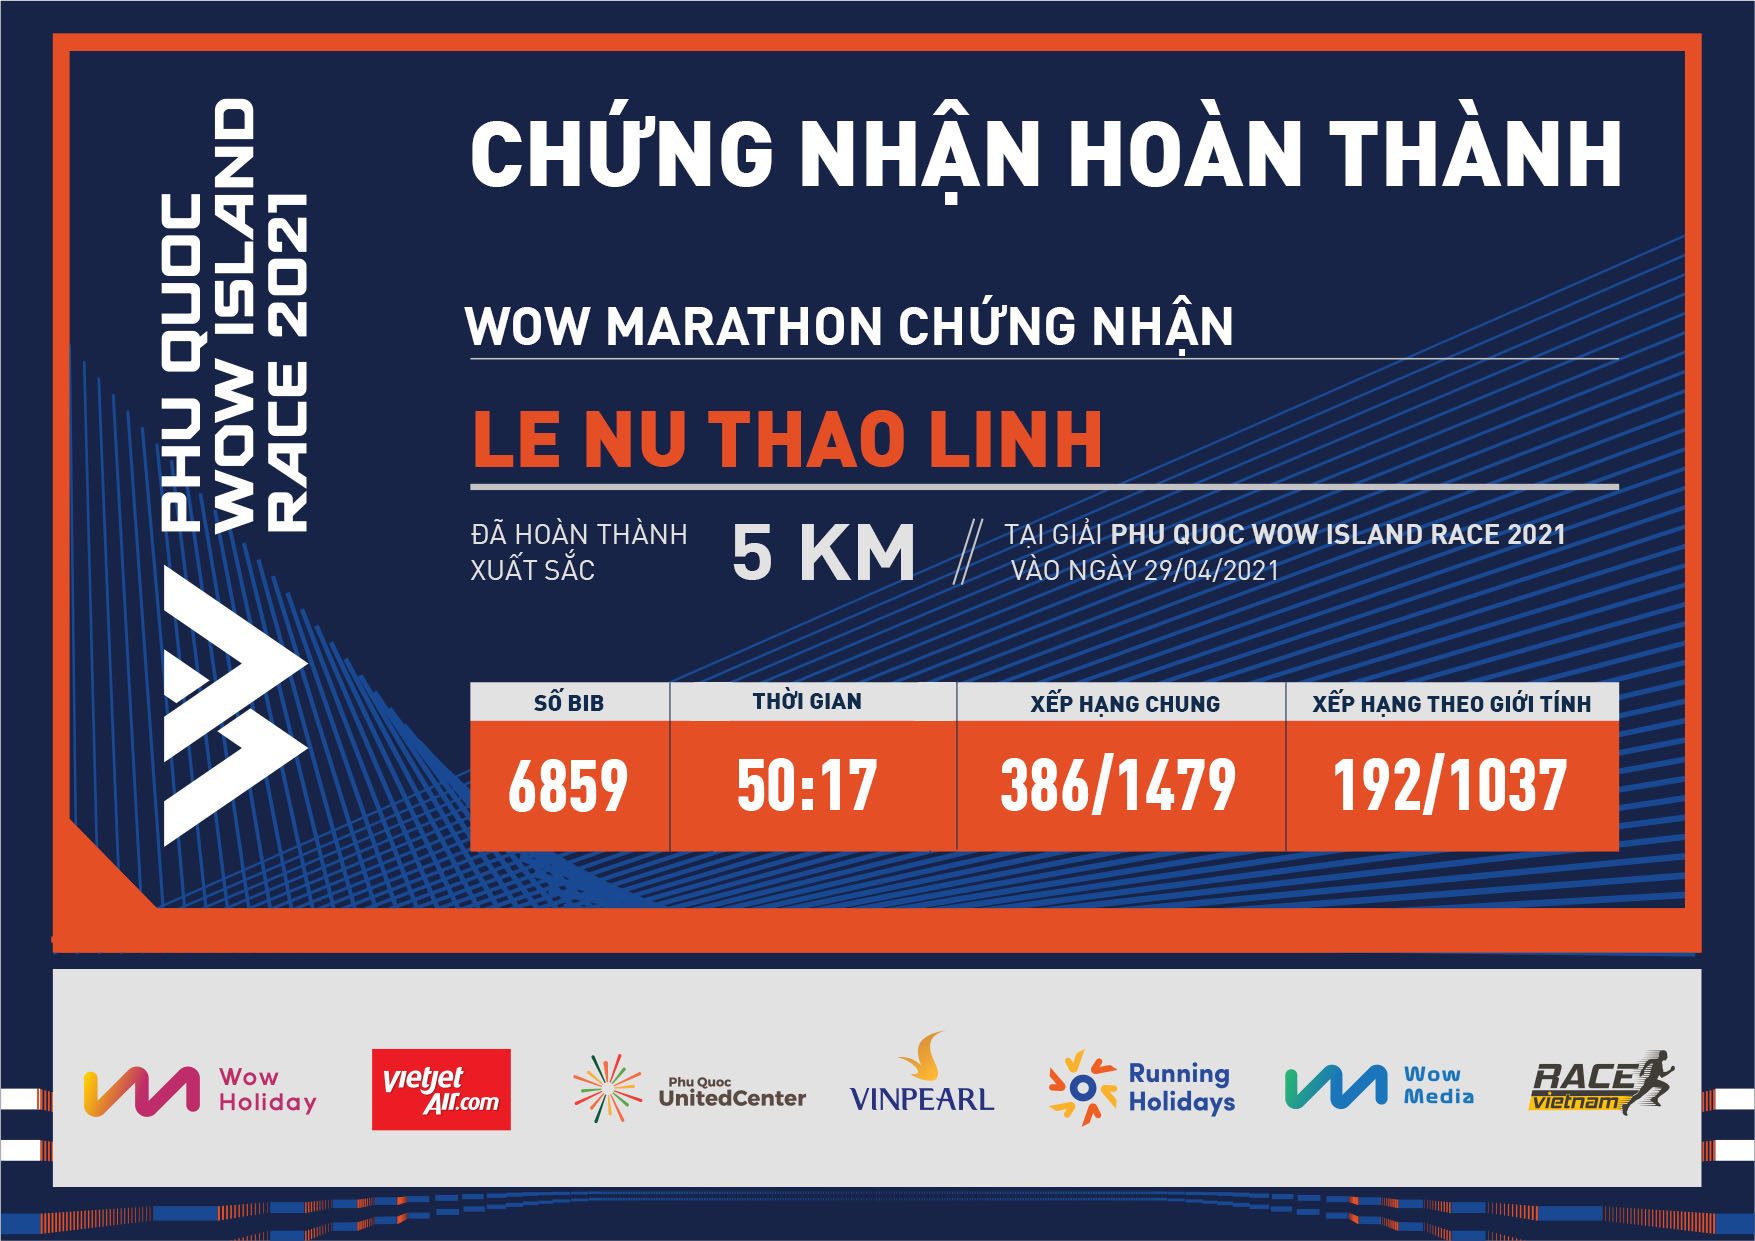 6859 - Le Nu Thao Linh